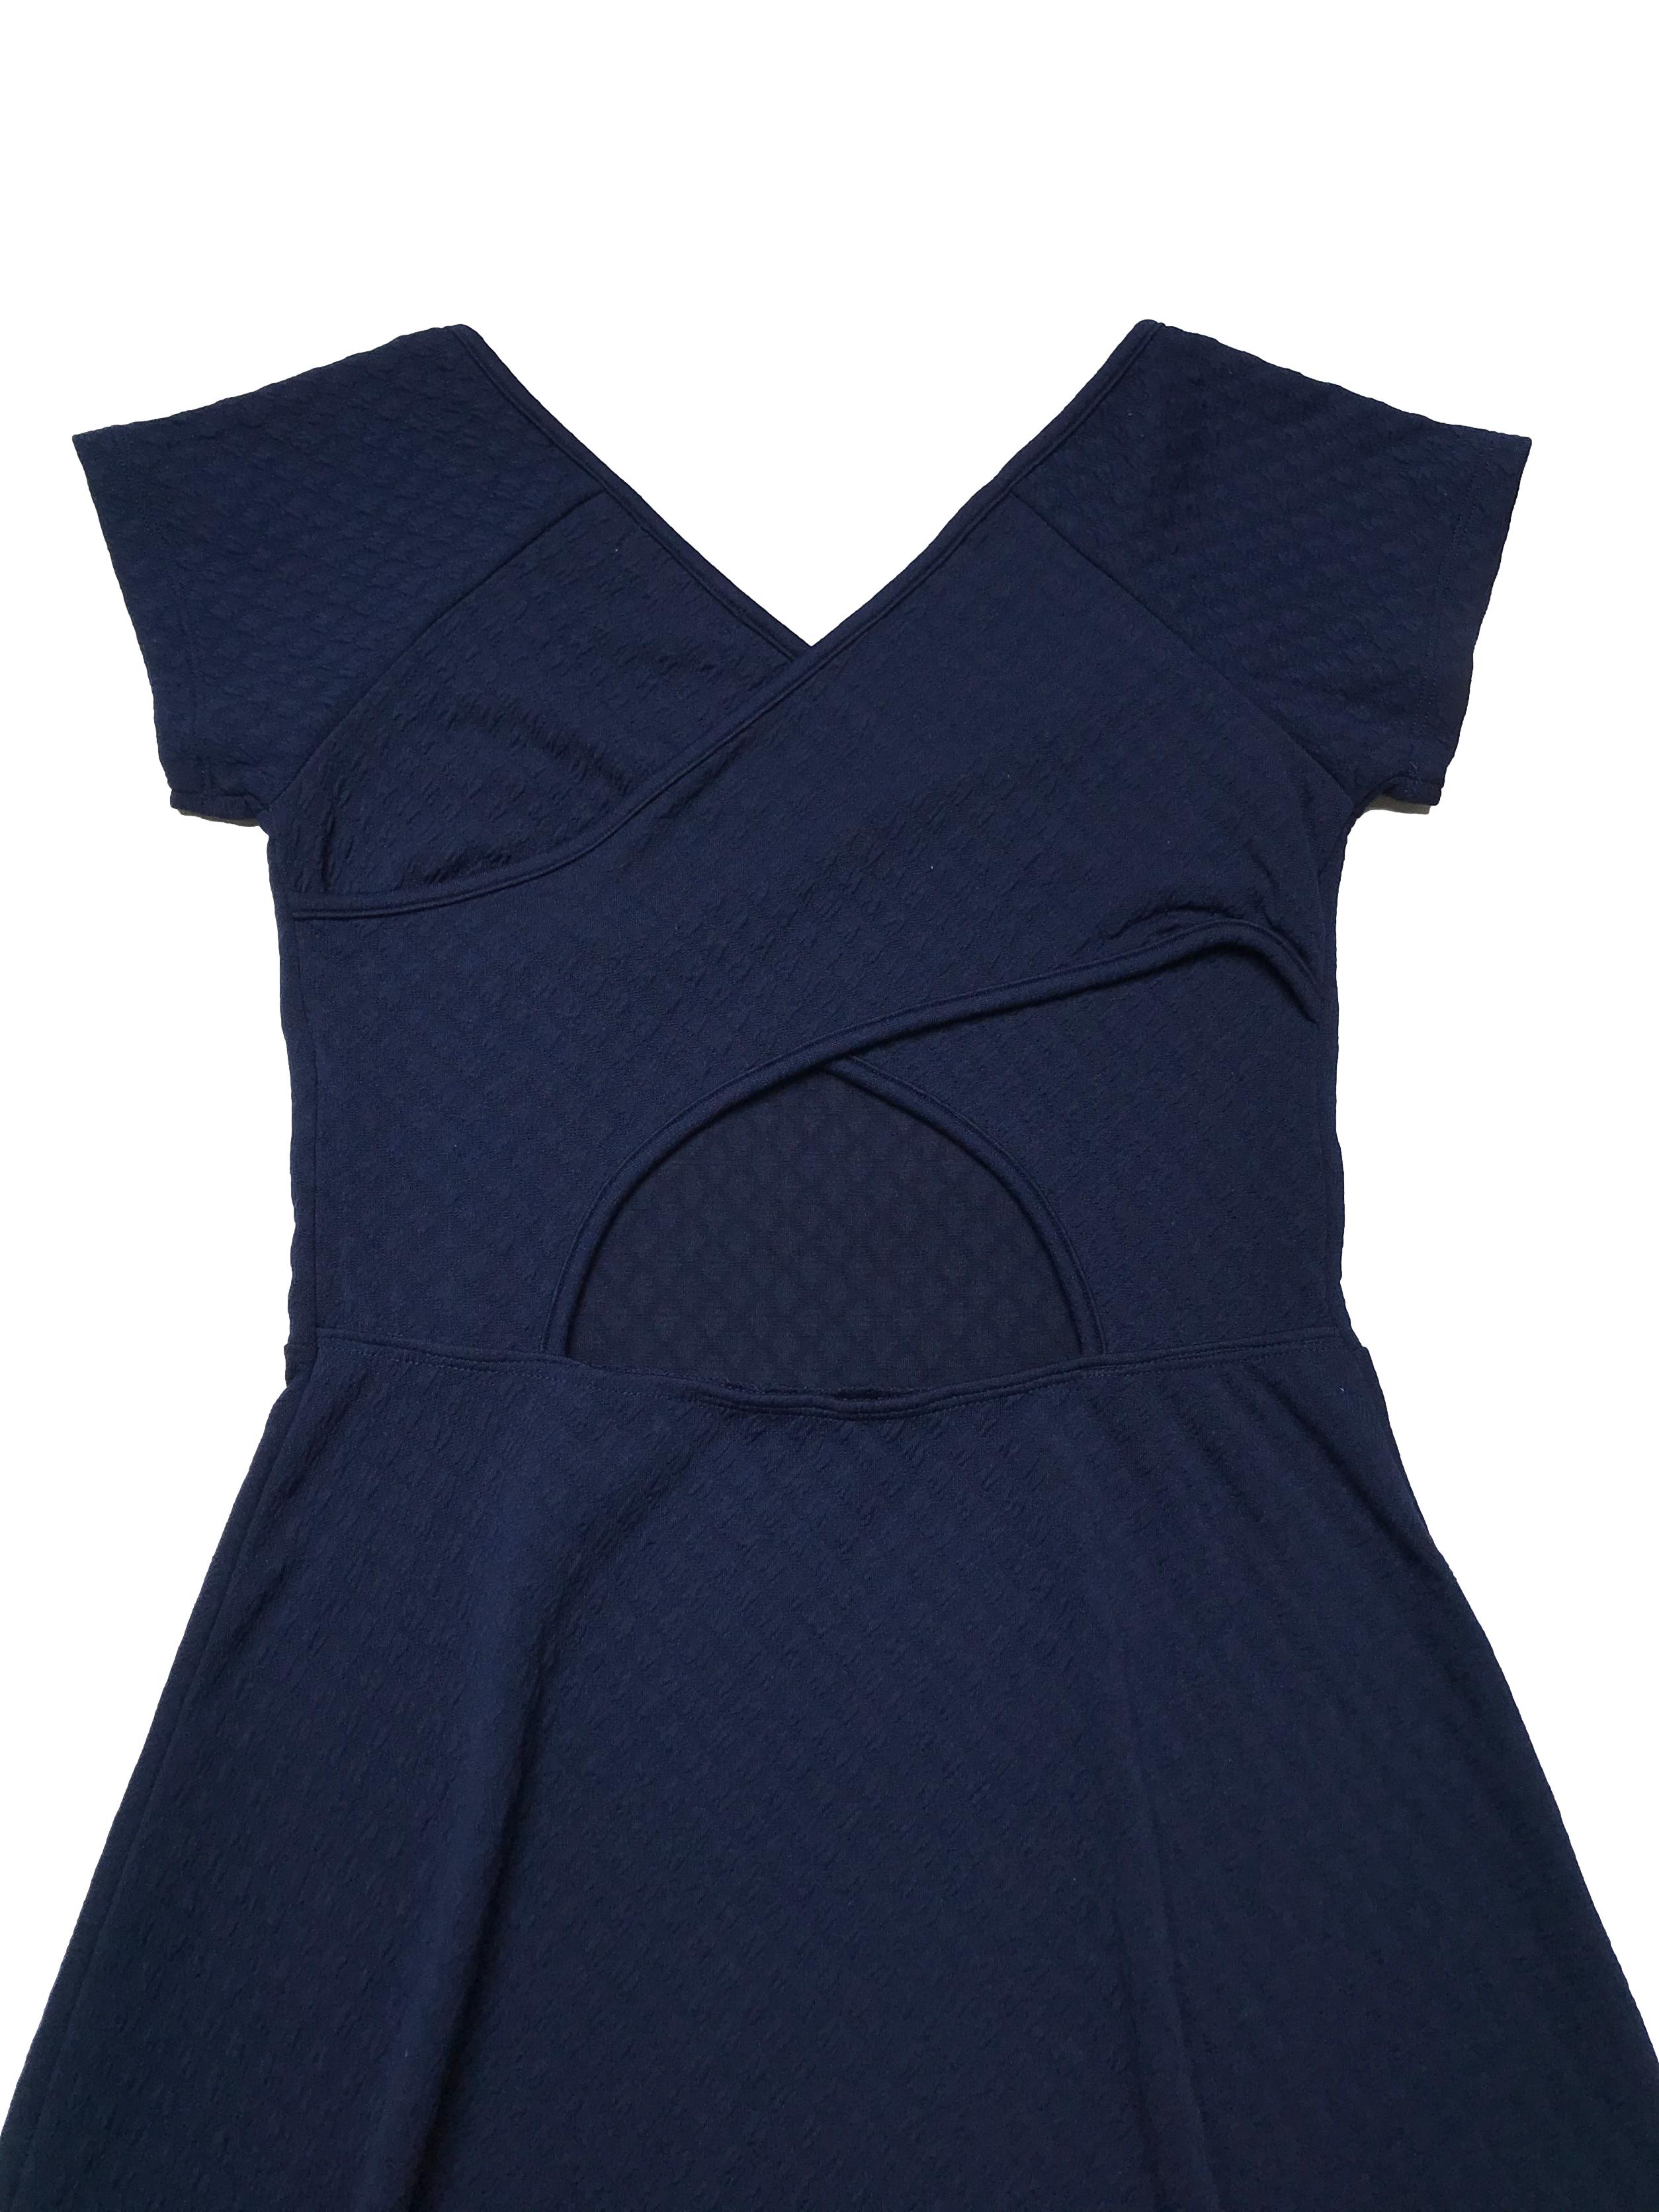 Vestido Hypnotic azul con textura, stretch, espalda cruzada y falda con vuelo. Largo 82cm